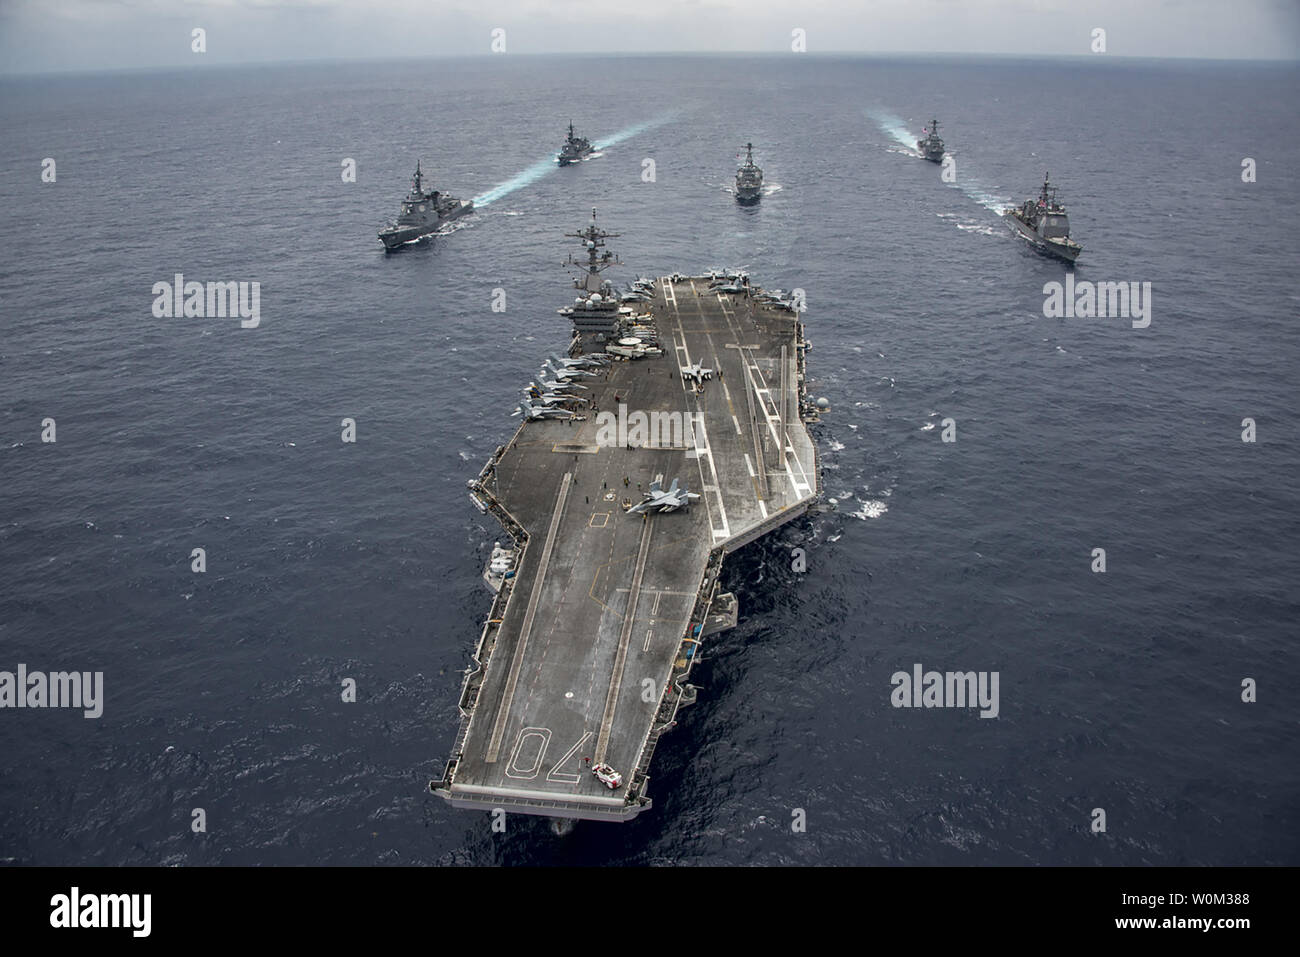 Der Nimitz-Klasse Flugzeugträger USS Carl Vinson (CVN 70) führt der Japan Maritime Verteidigung-kraft Zerstörer JS Ashigara (DDG178), links vorne, und JS Samidare (TT 106), links hinten, der Arleigh-burke-Klasse geführt - Flugzerstörer USS Michael Murphy (DDG112), in der Mitte hinten, und USS Wayne E.Meyer (DDG108), rechts hinten und die ticonderoga-Klasse geführte-missile Cruiser USS Lake Champlain (CG57), rechts vorn, bei einem Transit die Philippinische See, am 28. April 2017. Die US-Marine hat die Indo-Asia - Pazifik routinemäßig für mehr als 70 Jahre patrouillierten die Förderung von Frieden und Sicherheit in der Region. Foto von Stockfoto